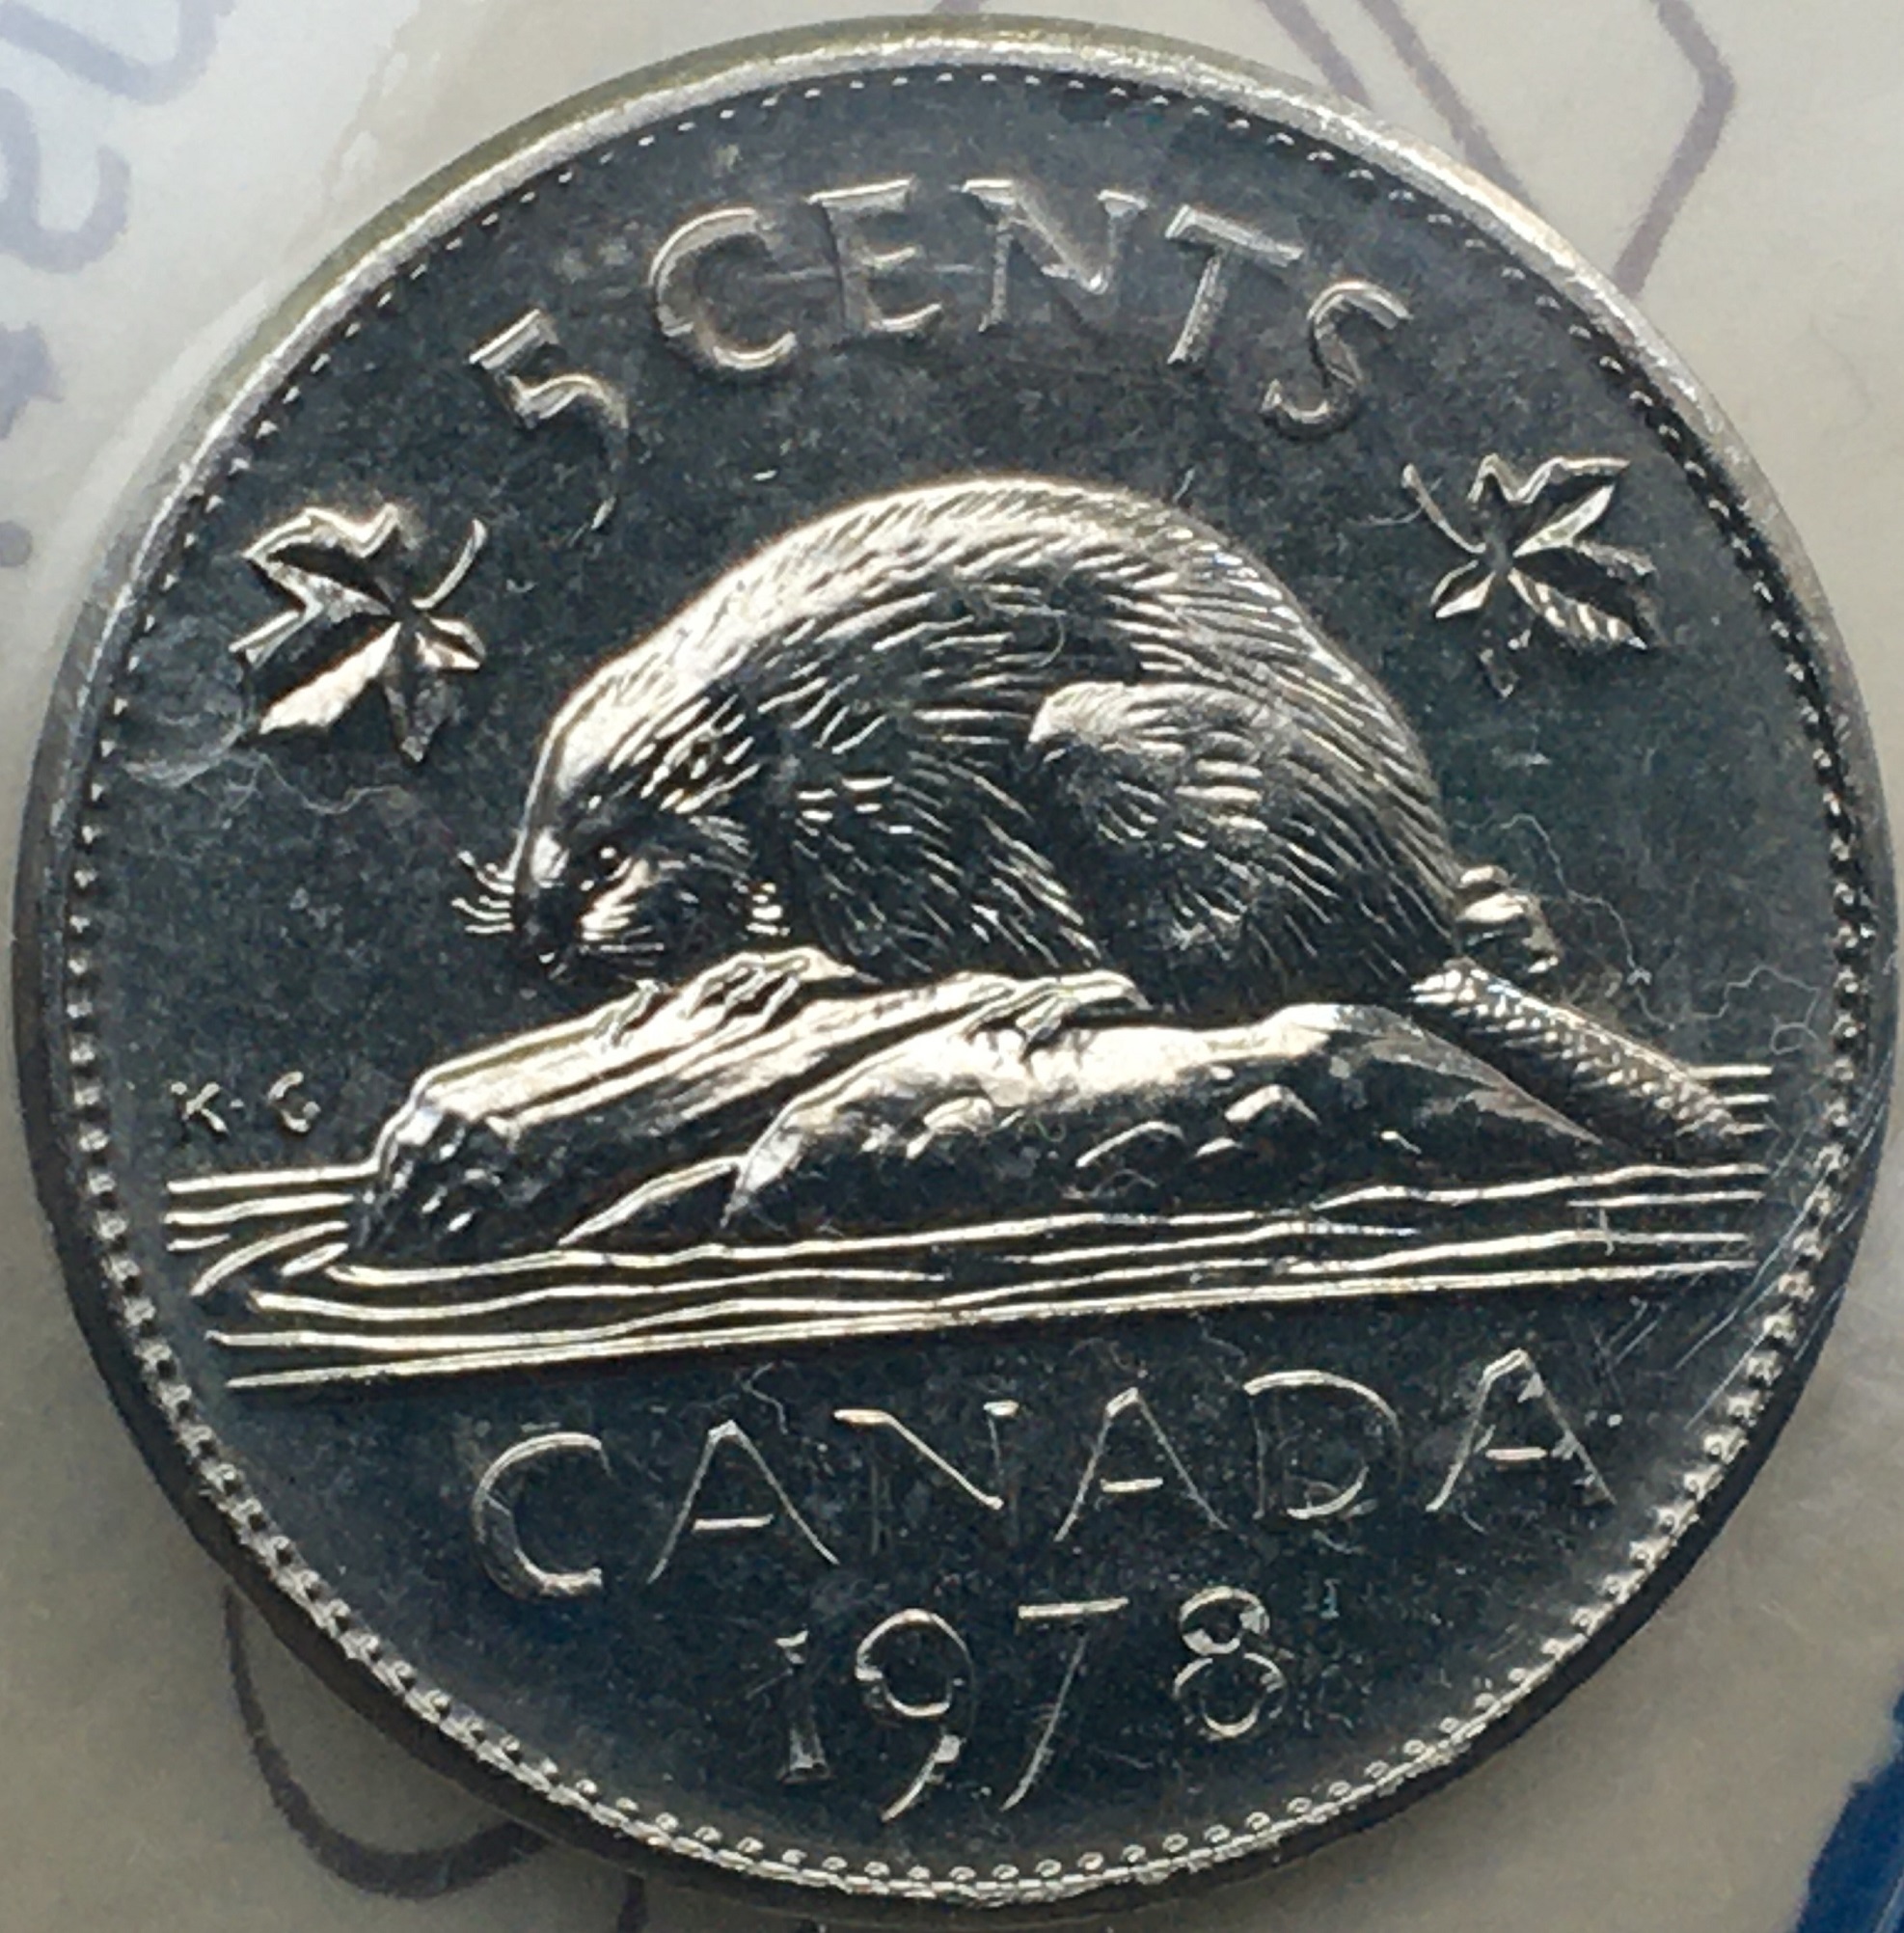 5 cents 1978 revers.jpg